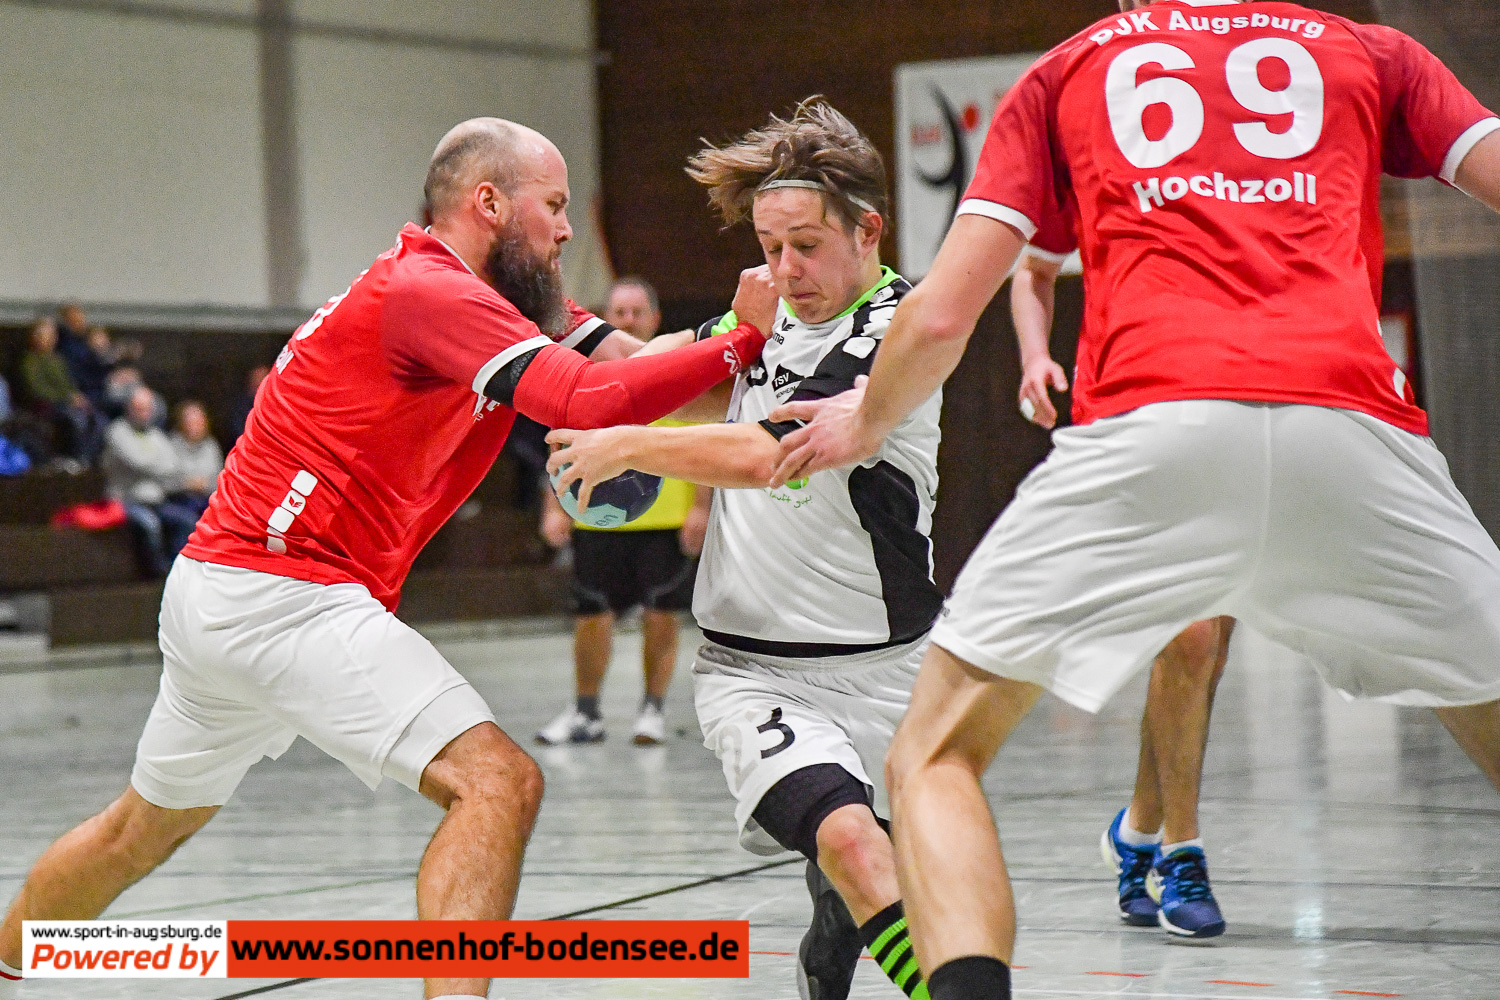 Handball in Augsburg DSC 2732